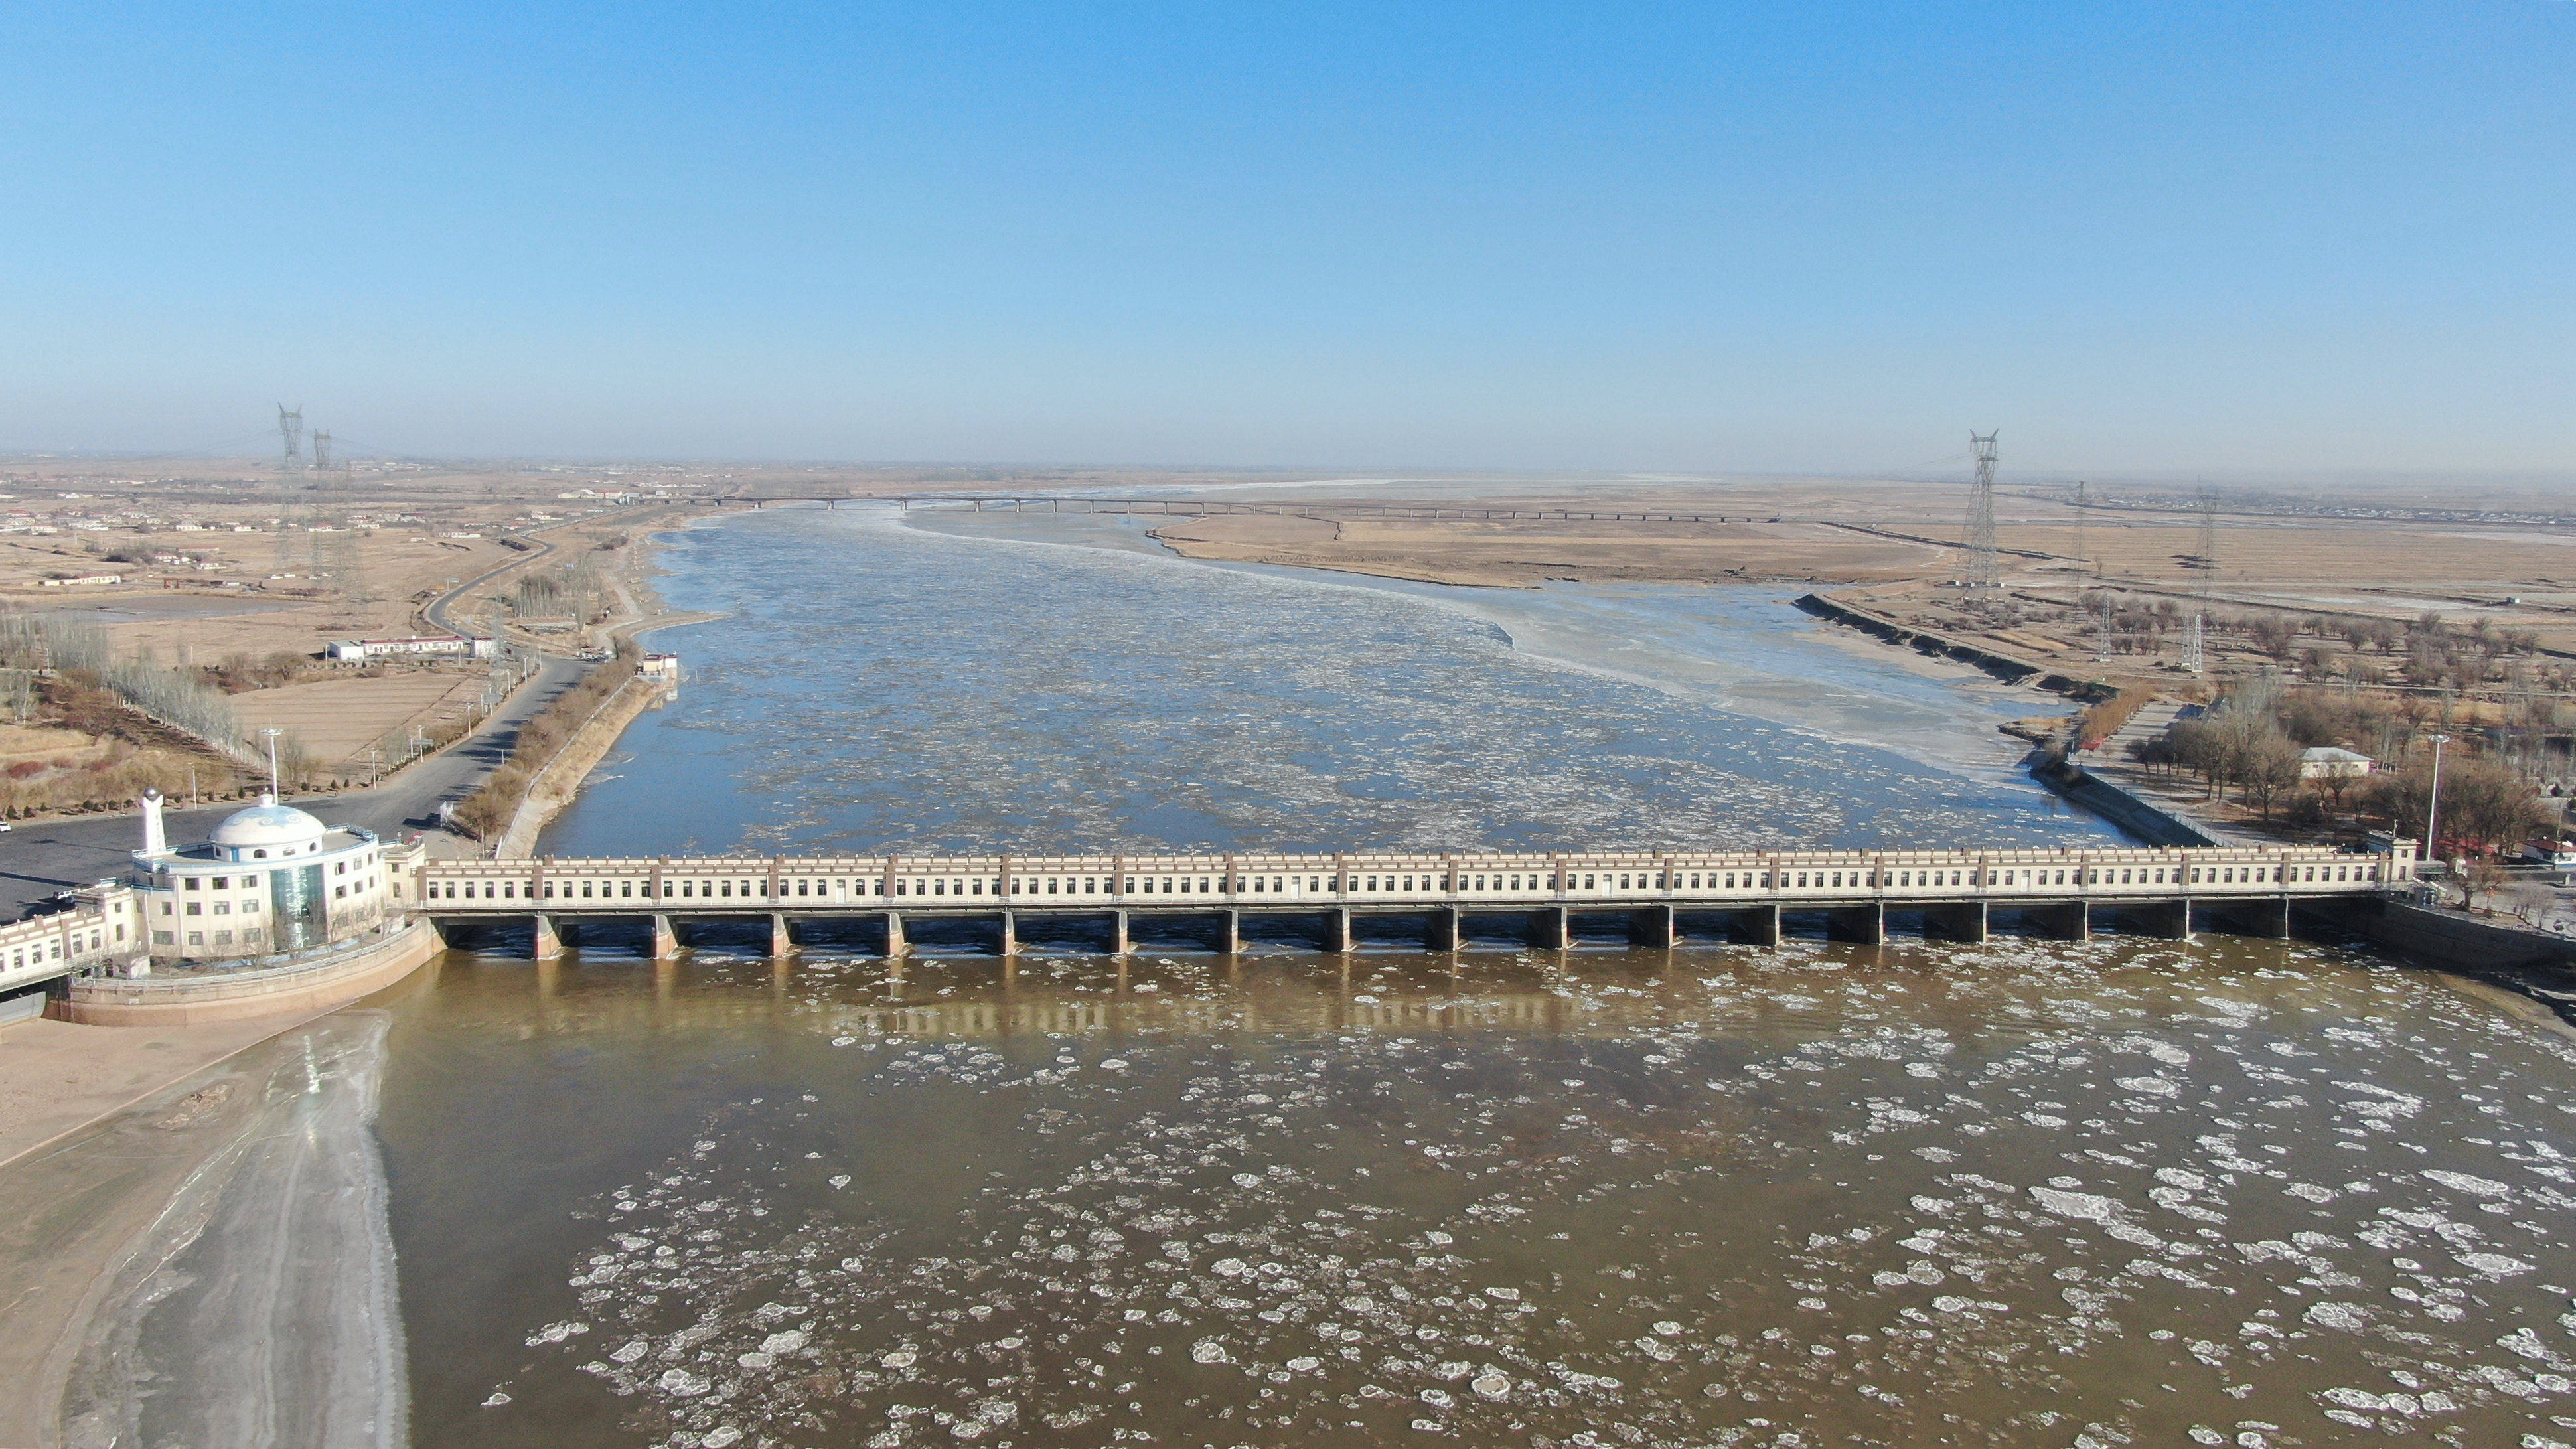 这是12月24日拍摄的三盛公水利枢纽黄河凌情(无人机照片).